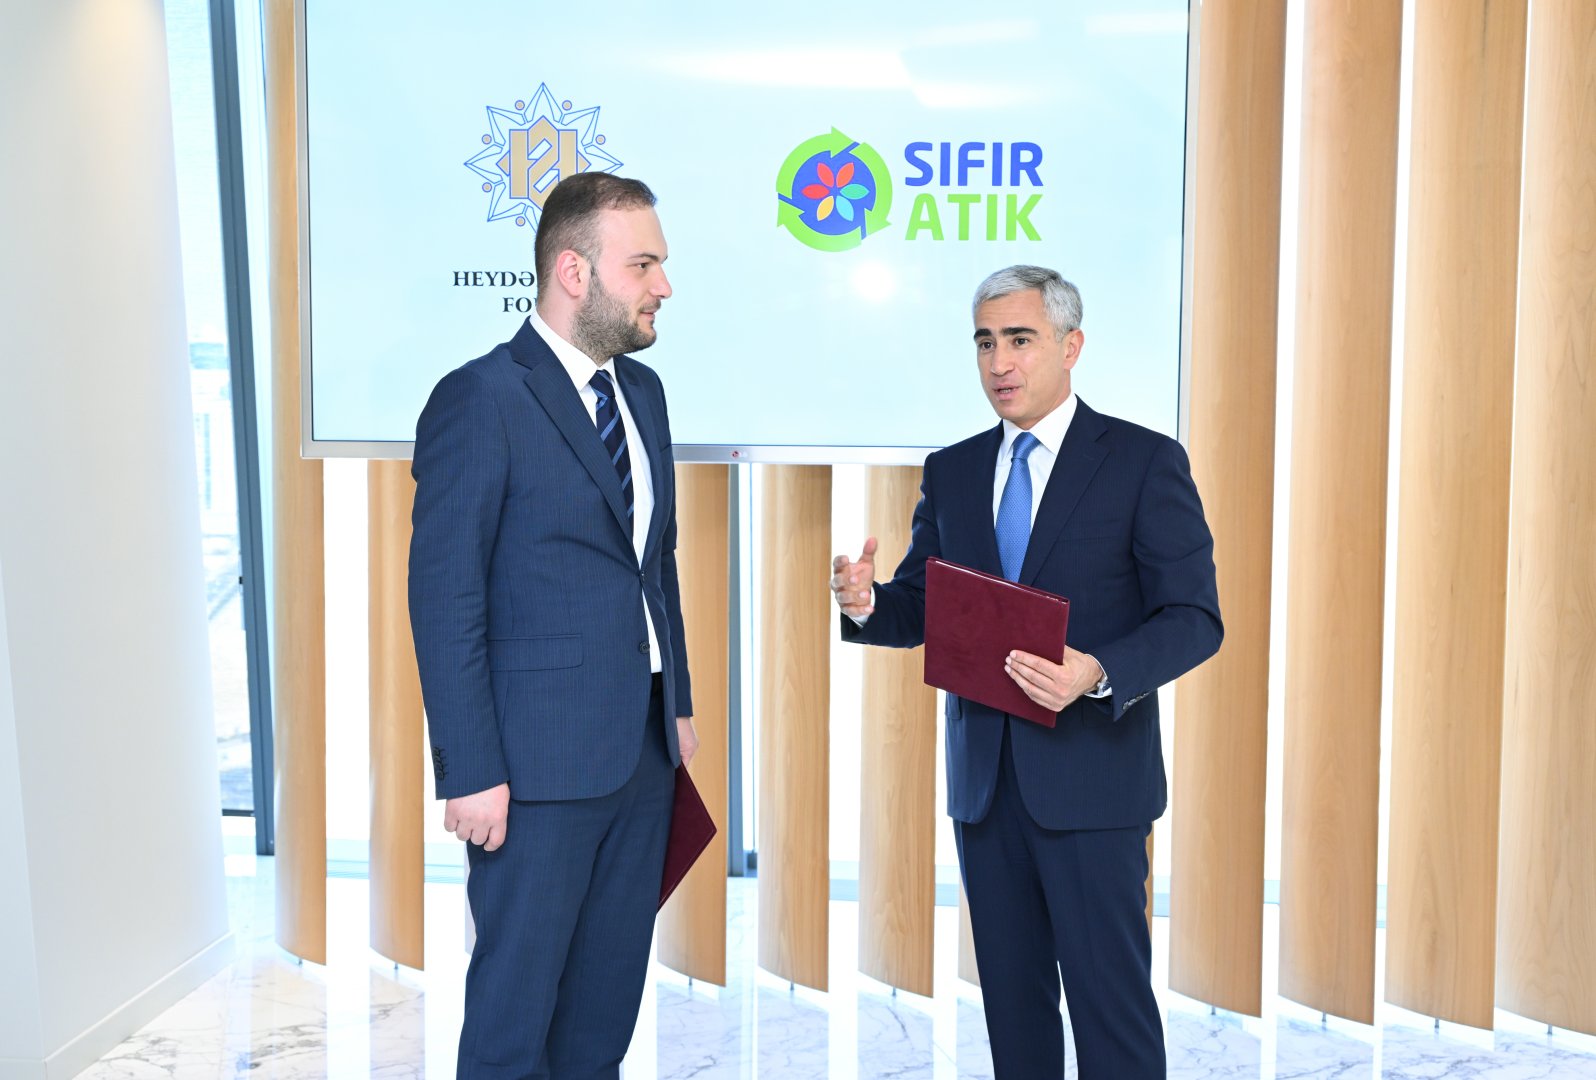 Heydər Əliyev Fondu ilə Türkiyənin Sıfır Atık Fondu arasında Anlaşma Memorandumu imzalanıb (FOTO)